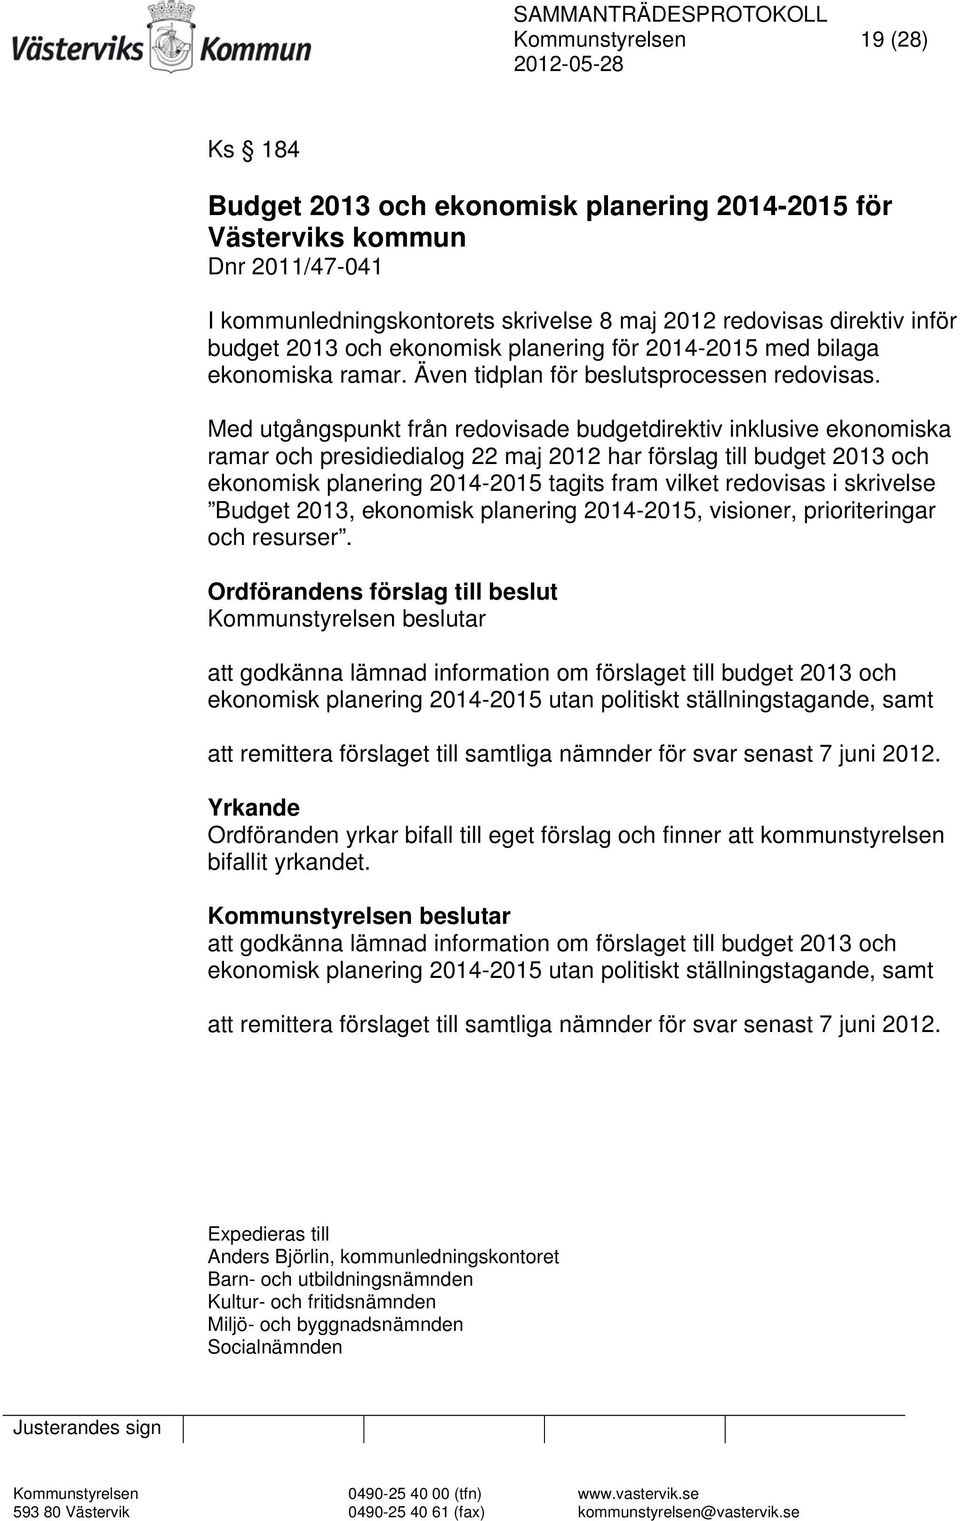 Med utgångspunkt från redovisade budgetdirektiv inklusive ekonomiska ramar och presidiedialog 22 maj 2012 har förslag till budget 2013 och ekonomisk planering 2014-2015 tagits fram vilket redovisas i